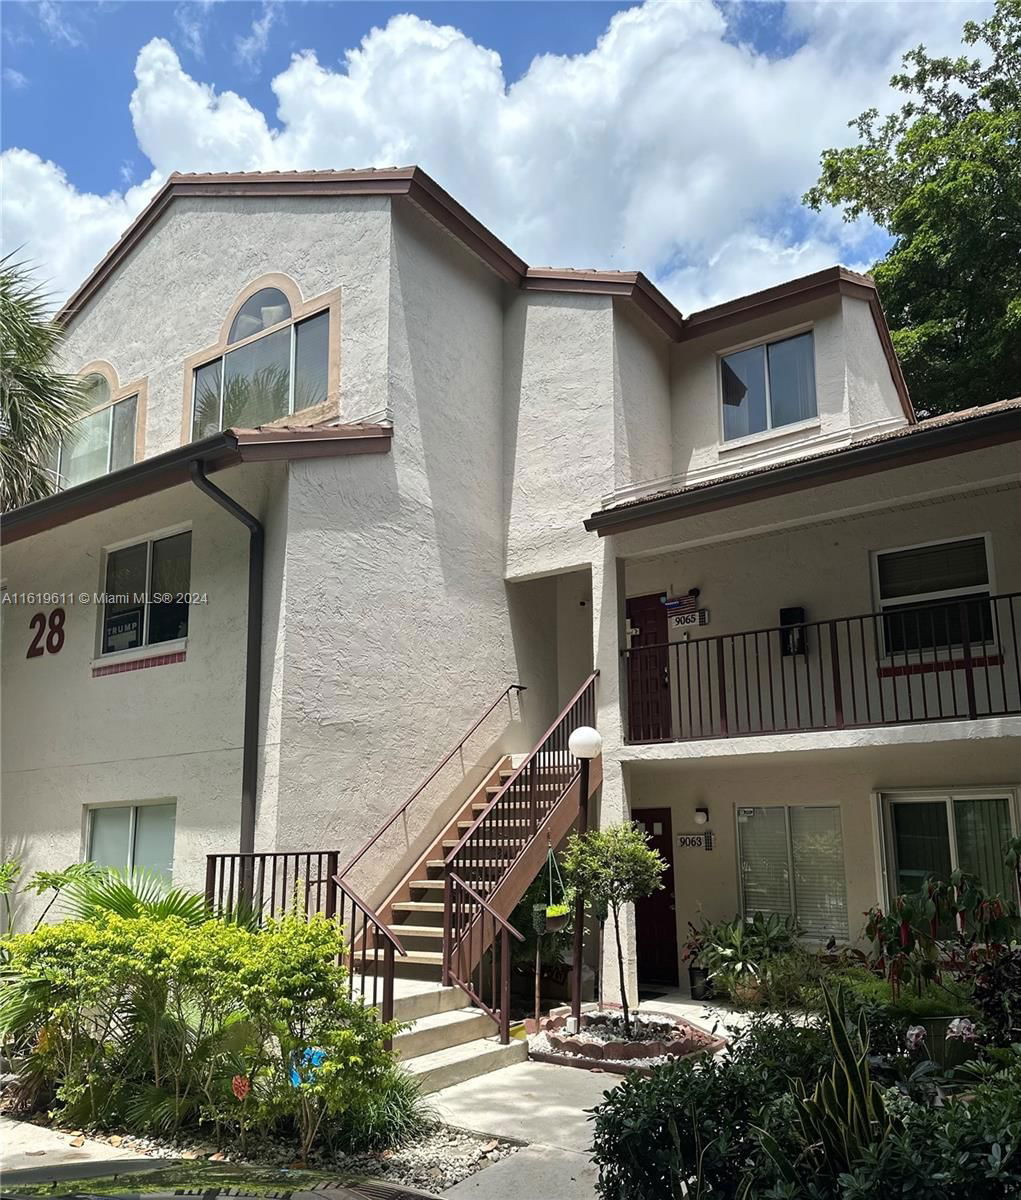 Real estate property located at 9065 141st Pl #9065, Miami-Dade County, PARC VISTA CONDO, Miami, FL